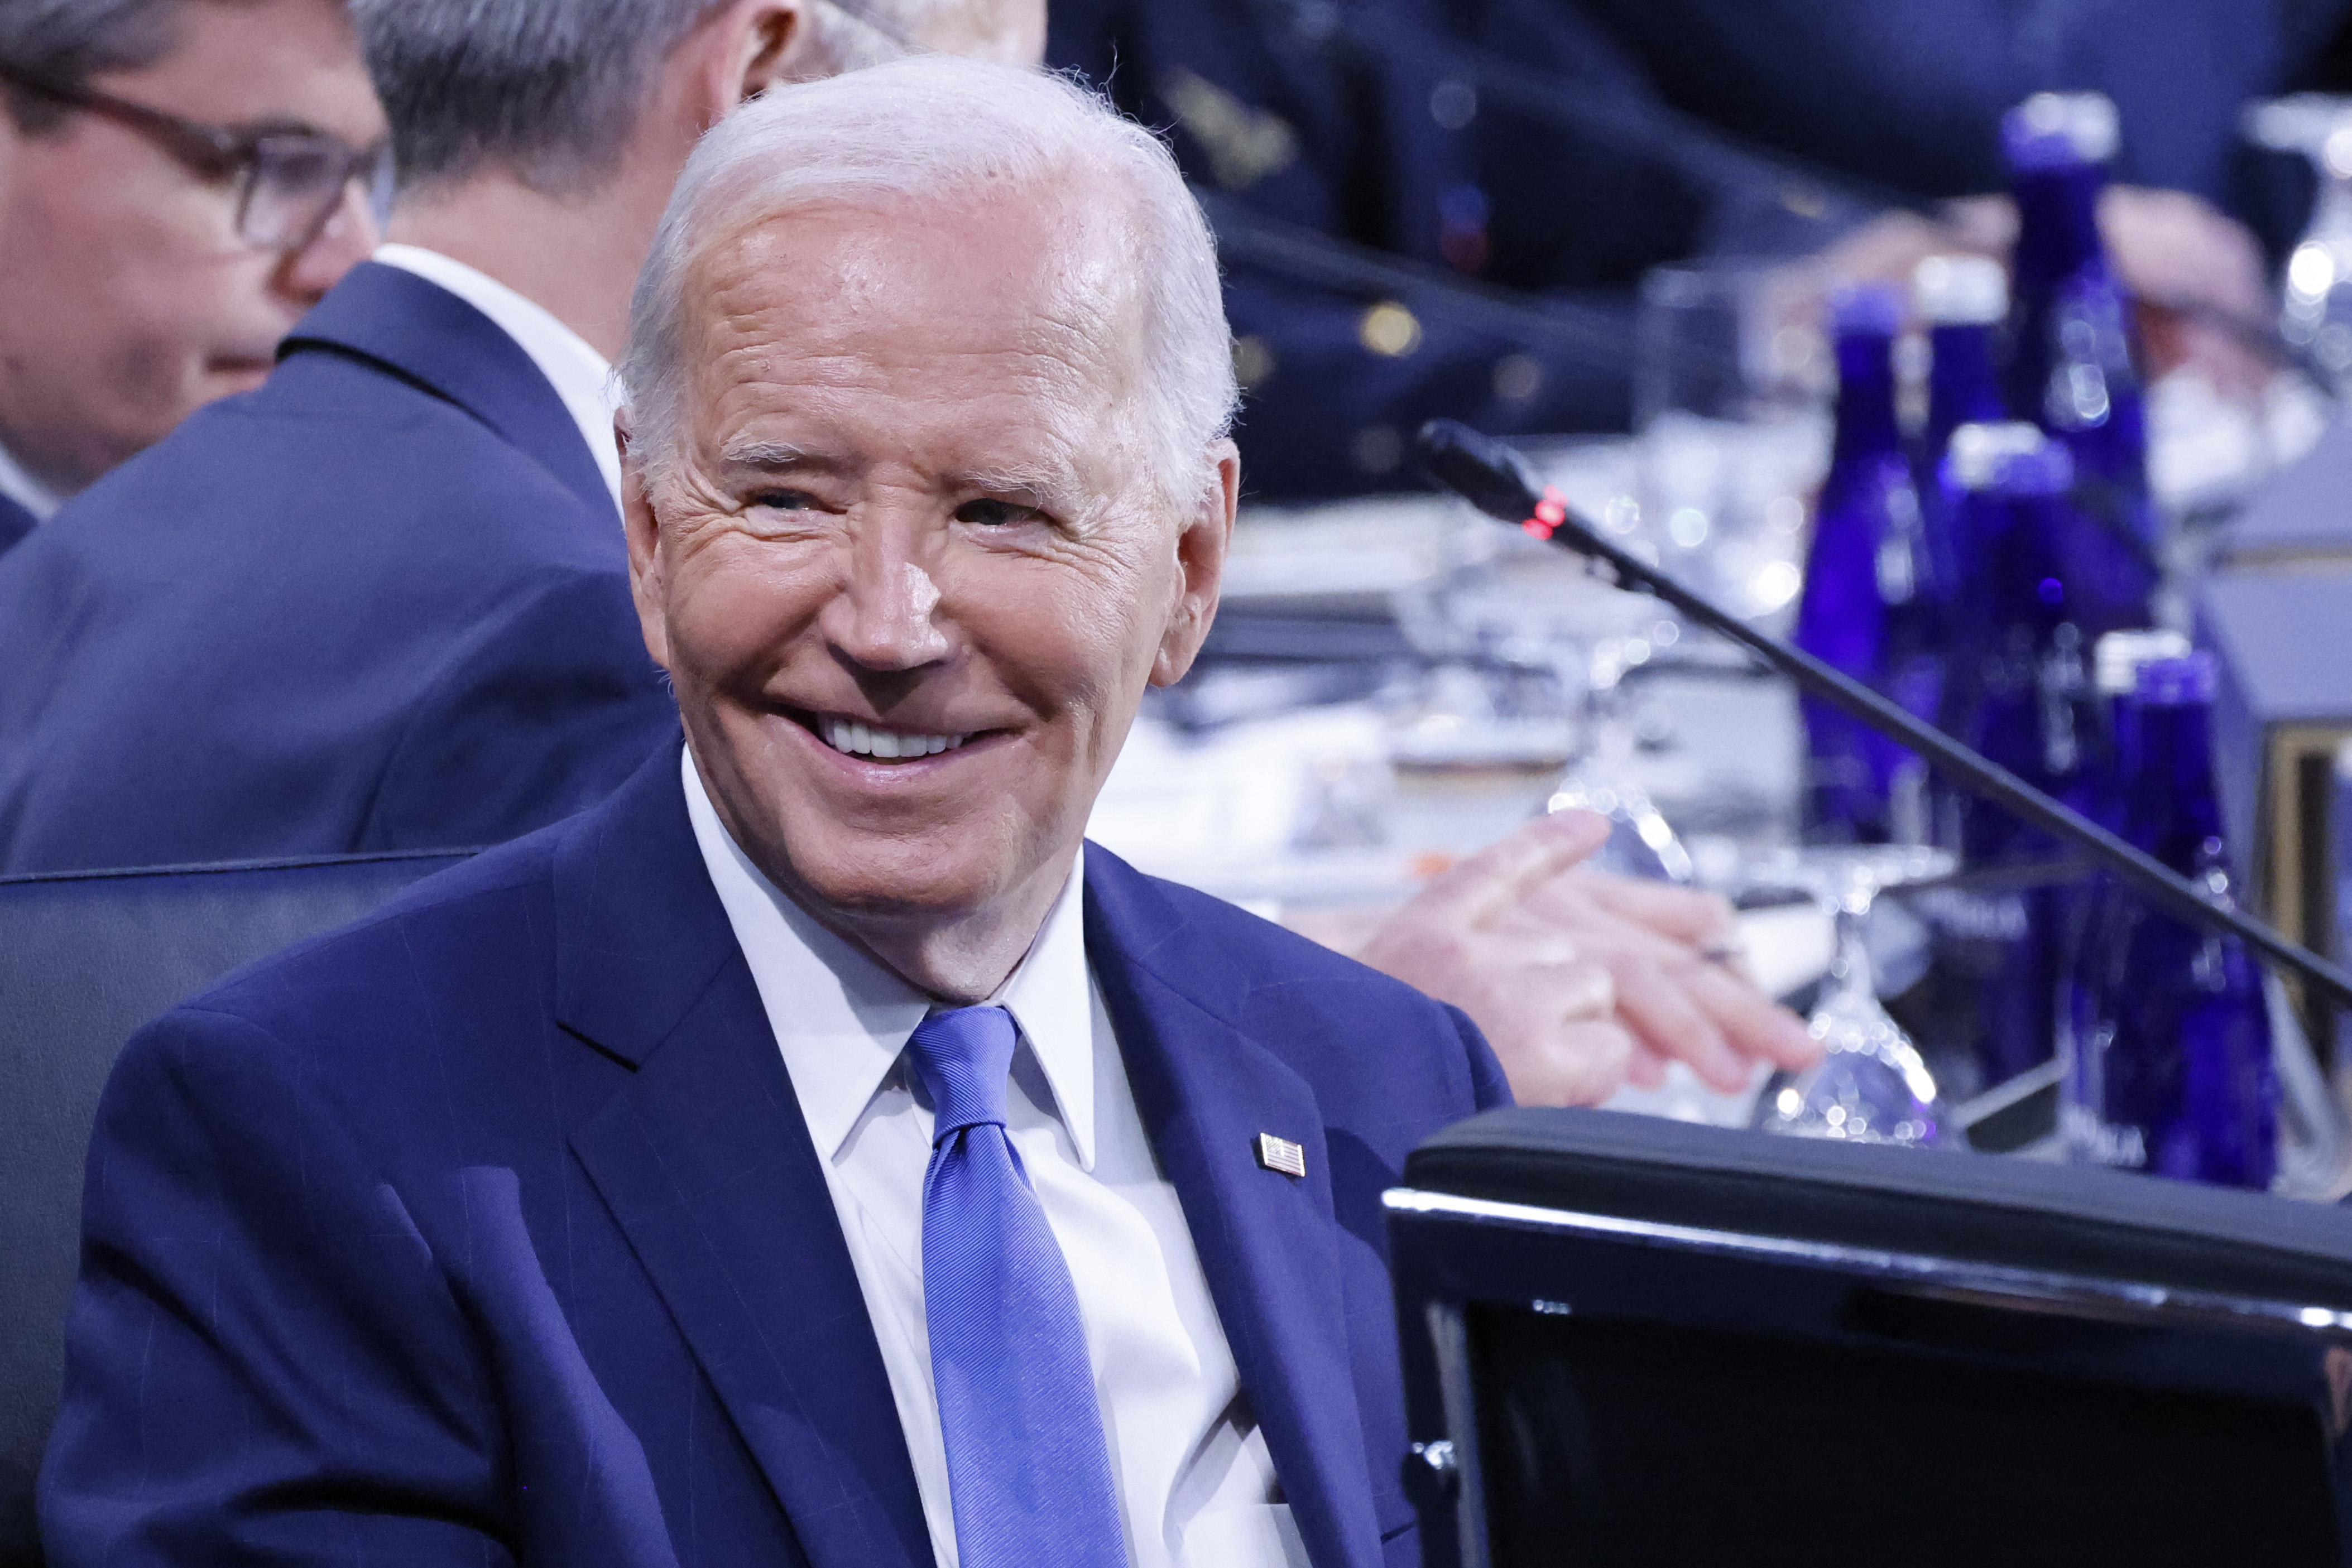 Should Joe Biden Stay in the Presidential Race or Go?